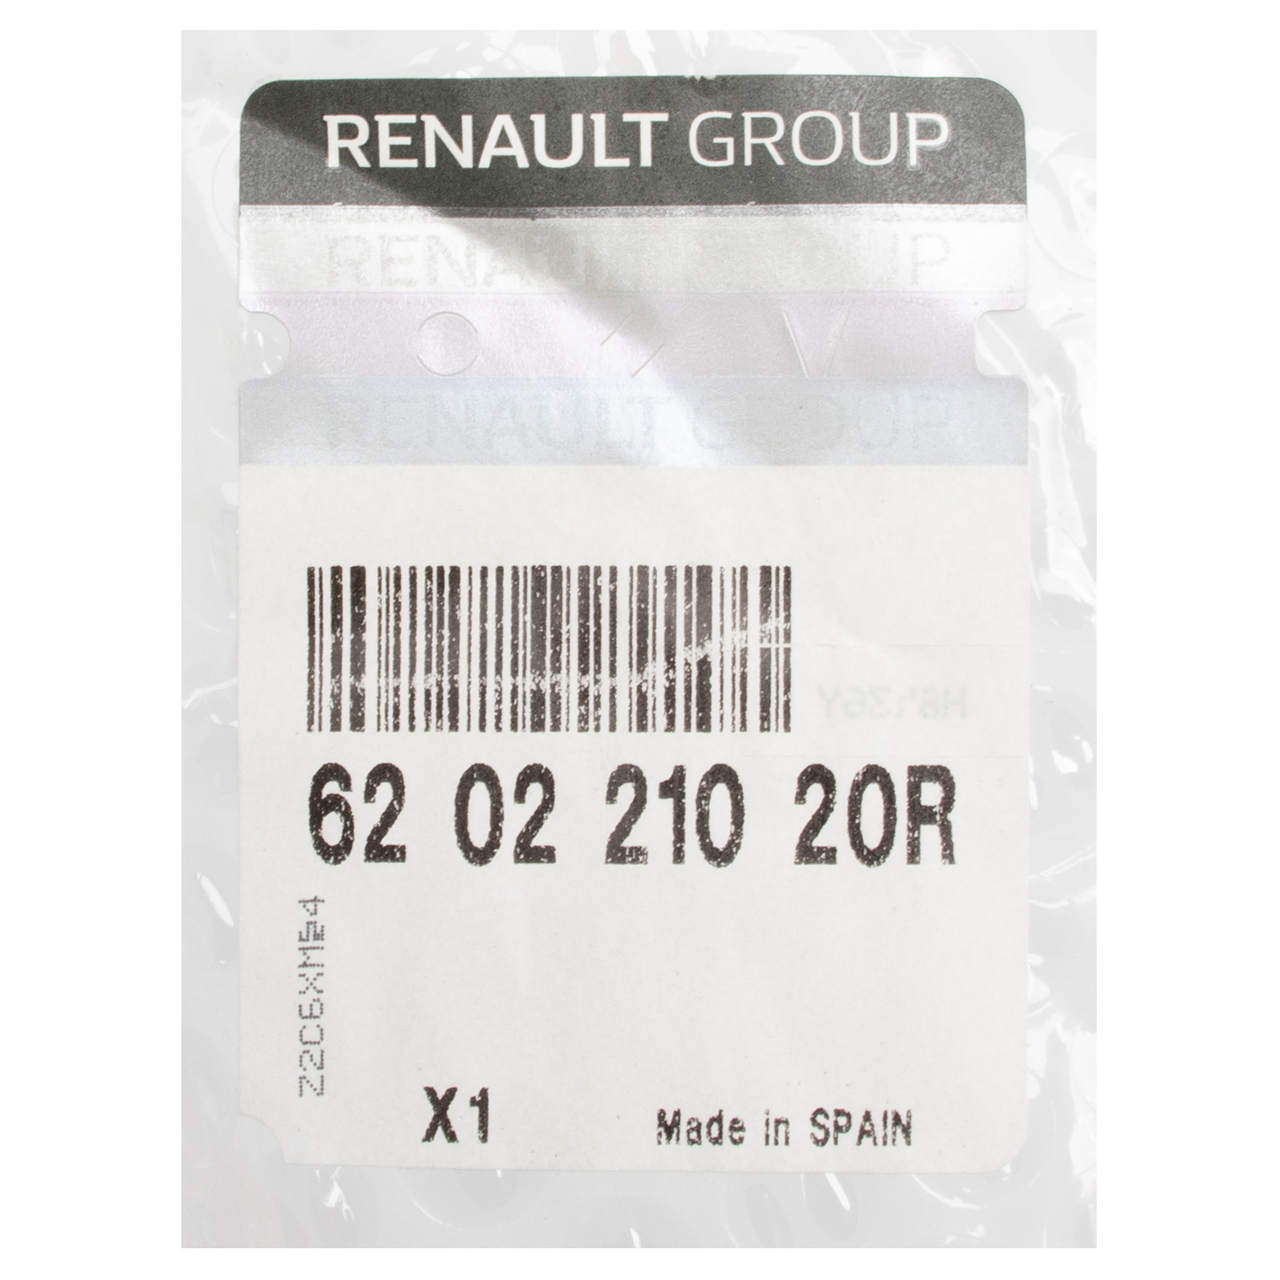 ORIGINAL Renault Stoßstange Stoßstangenträger Megane 3 vorne 620221020R